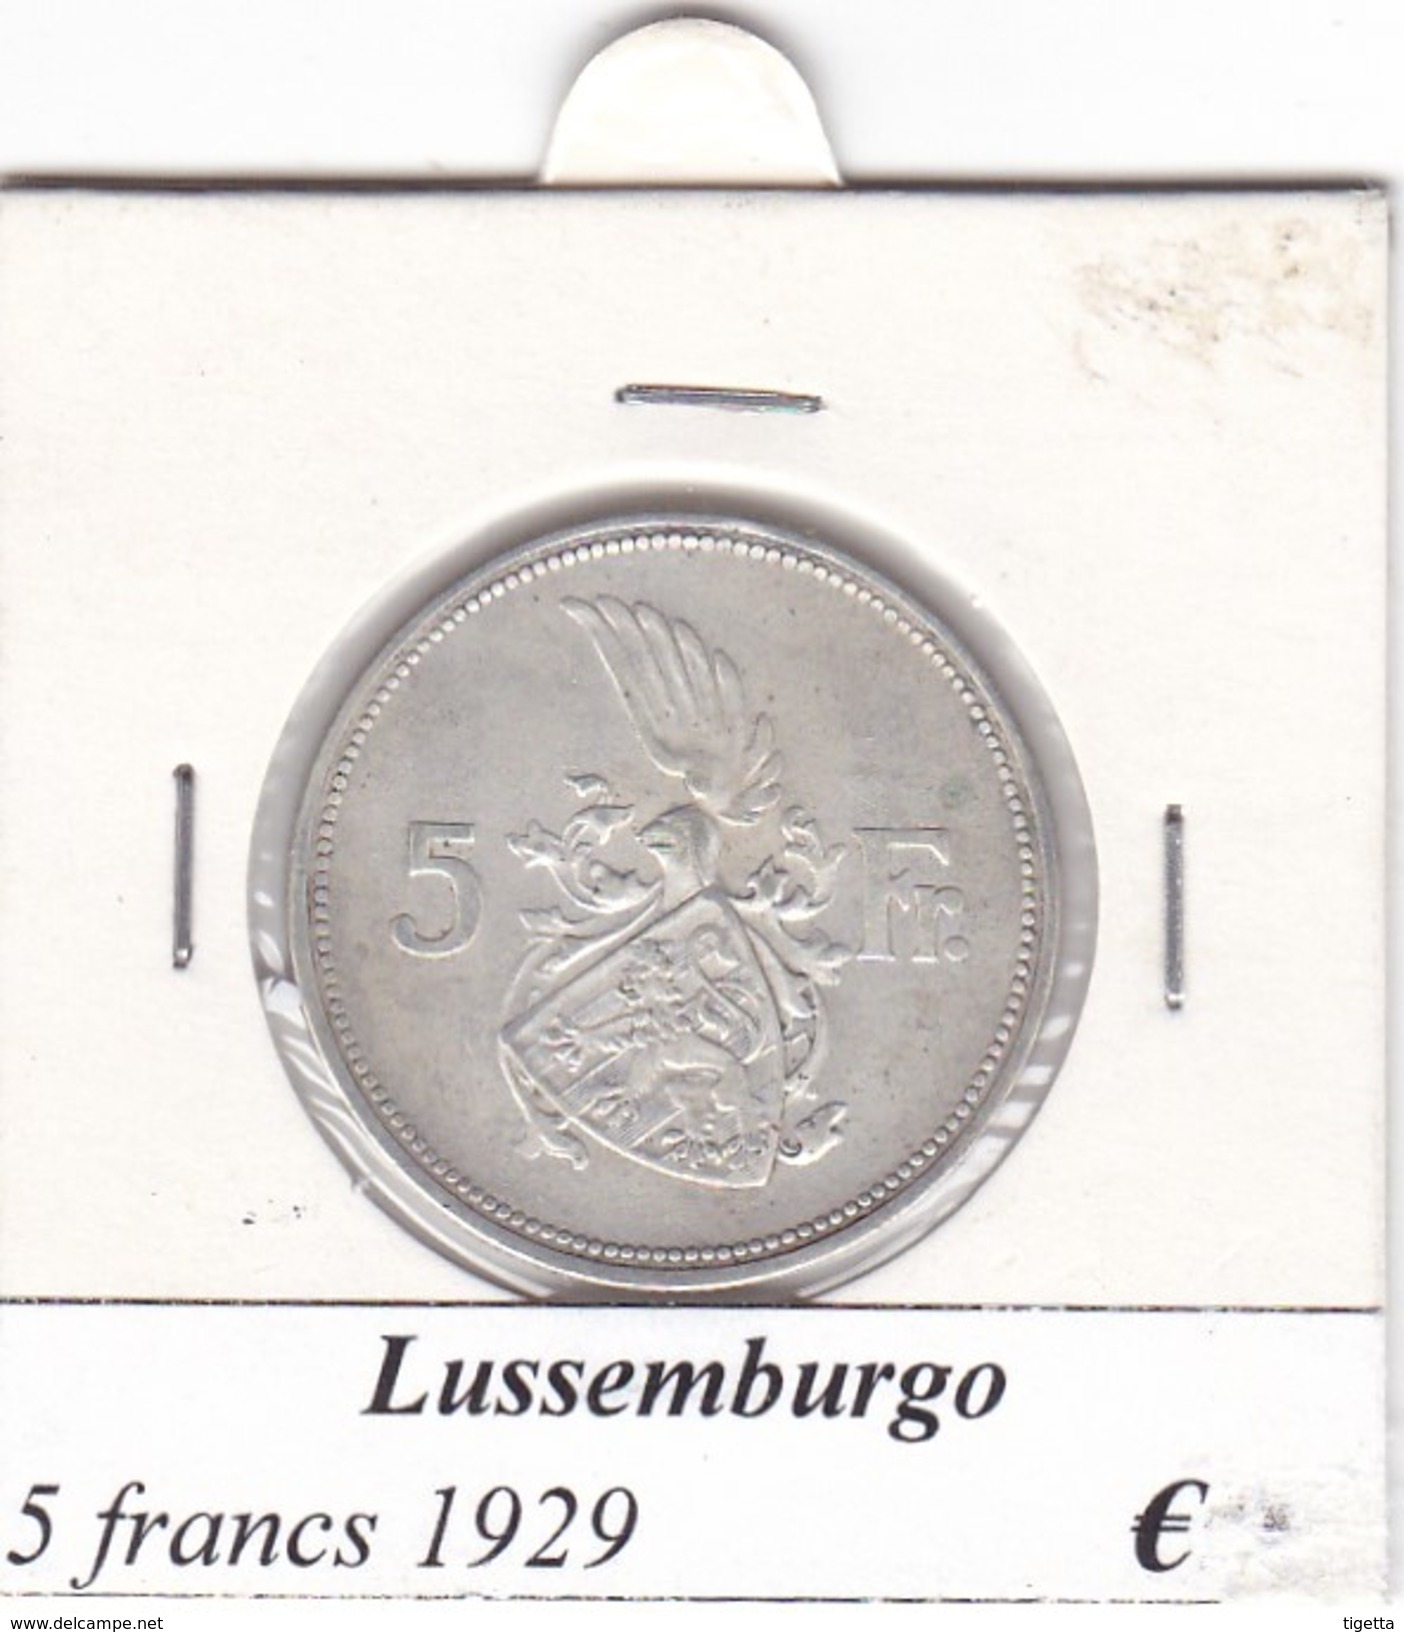 LUSSEMBURGO   5 FRANCS   ANNO 1929  COME DA FOTO - Luxembourg